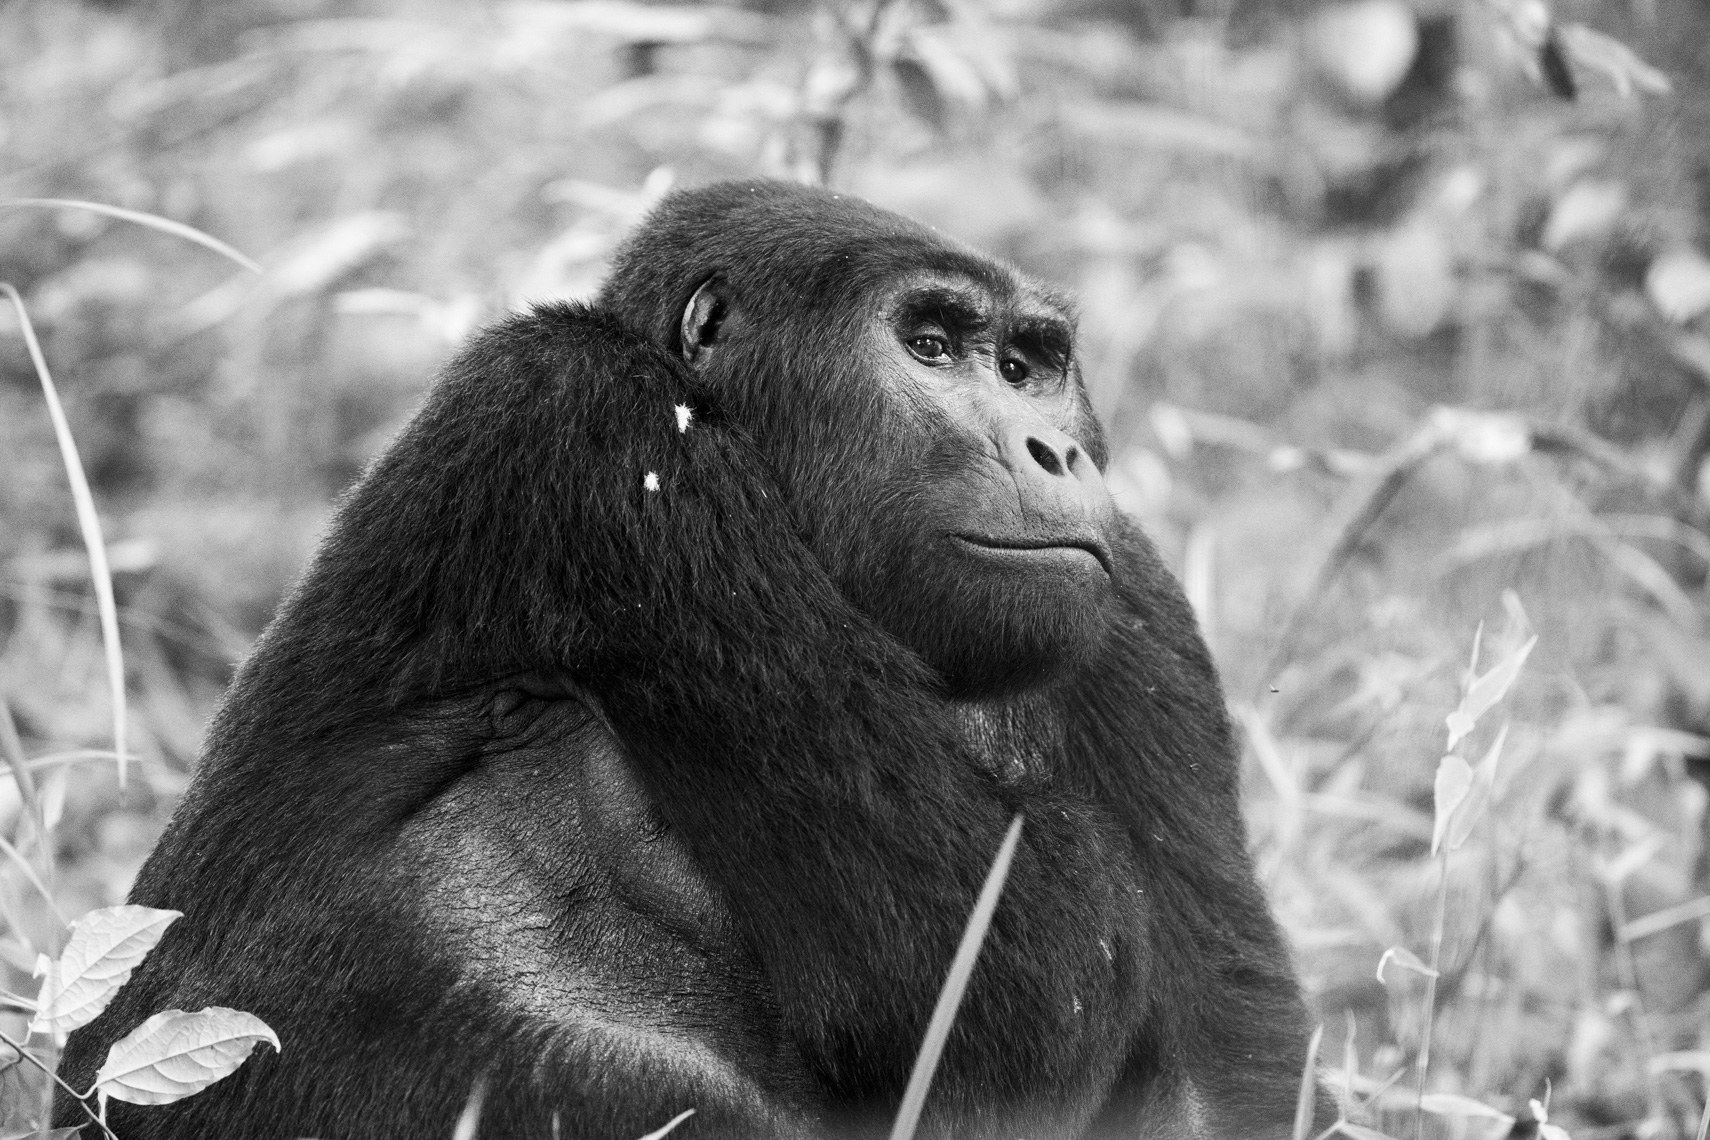 calla_fleischer_02_resize_small_gorillas_Africa2017